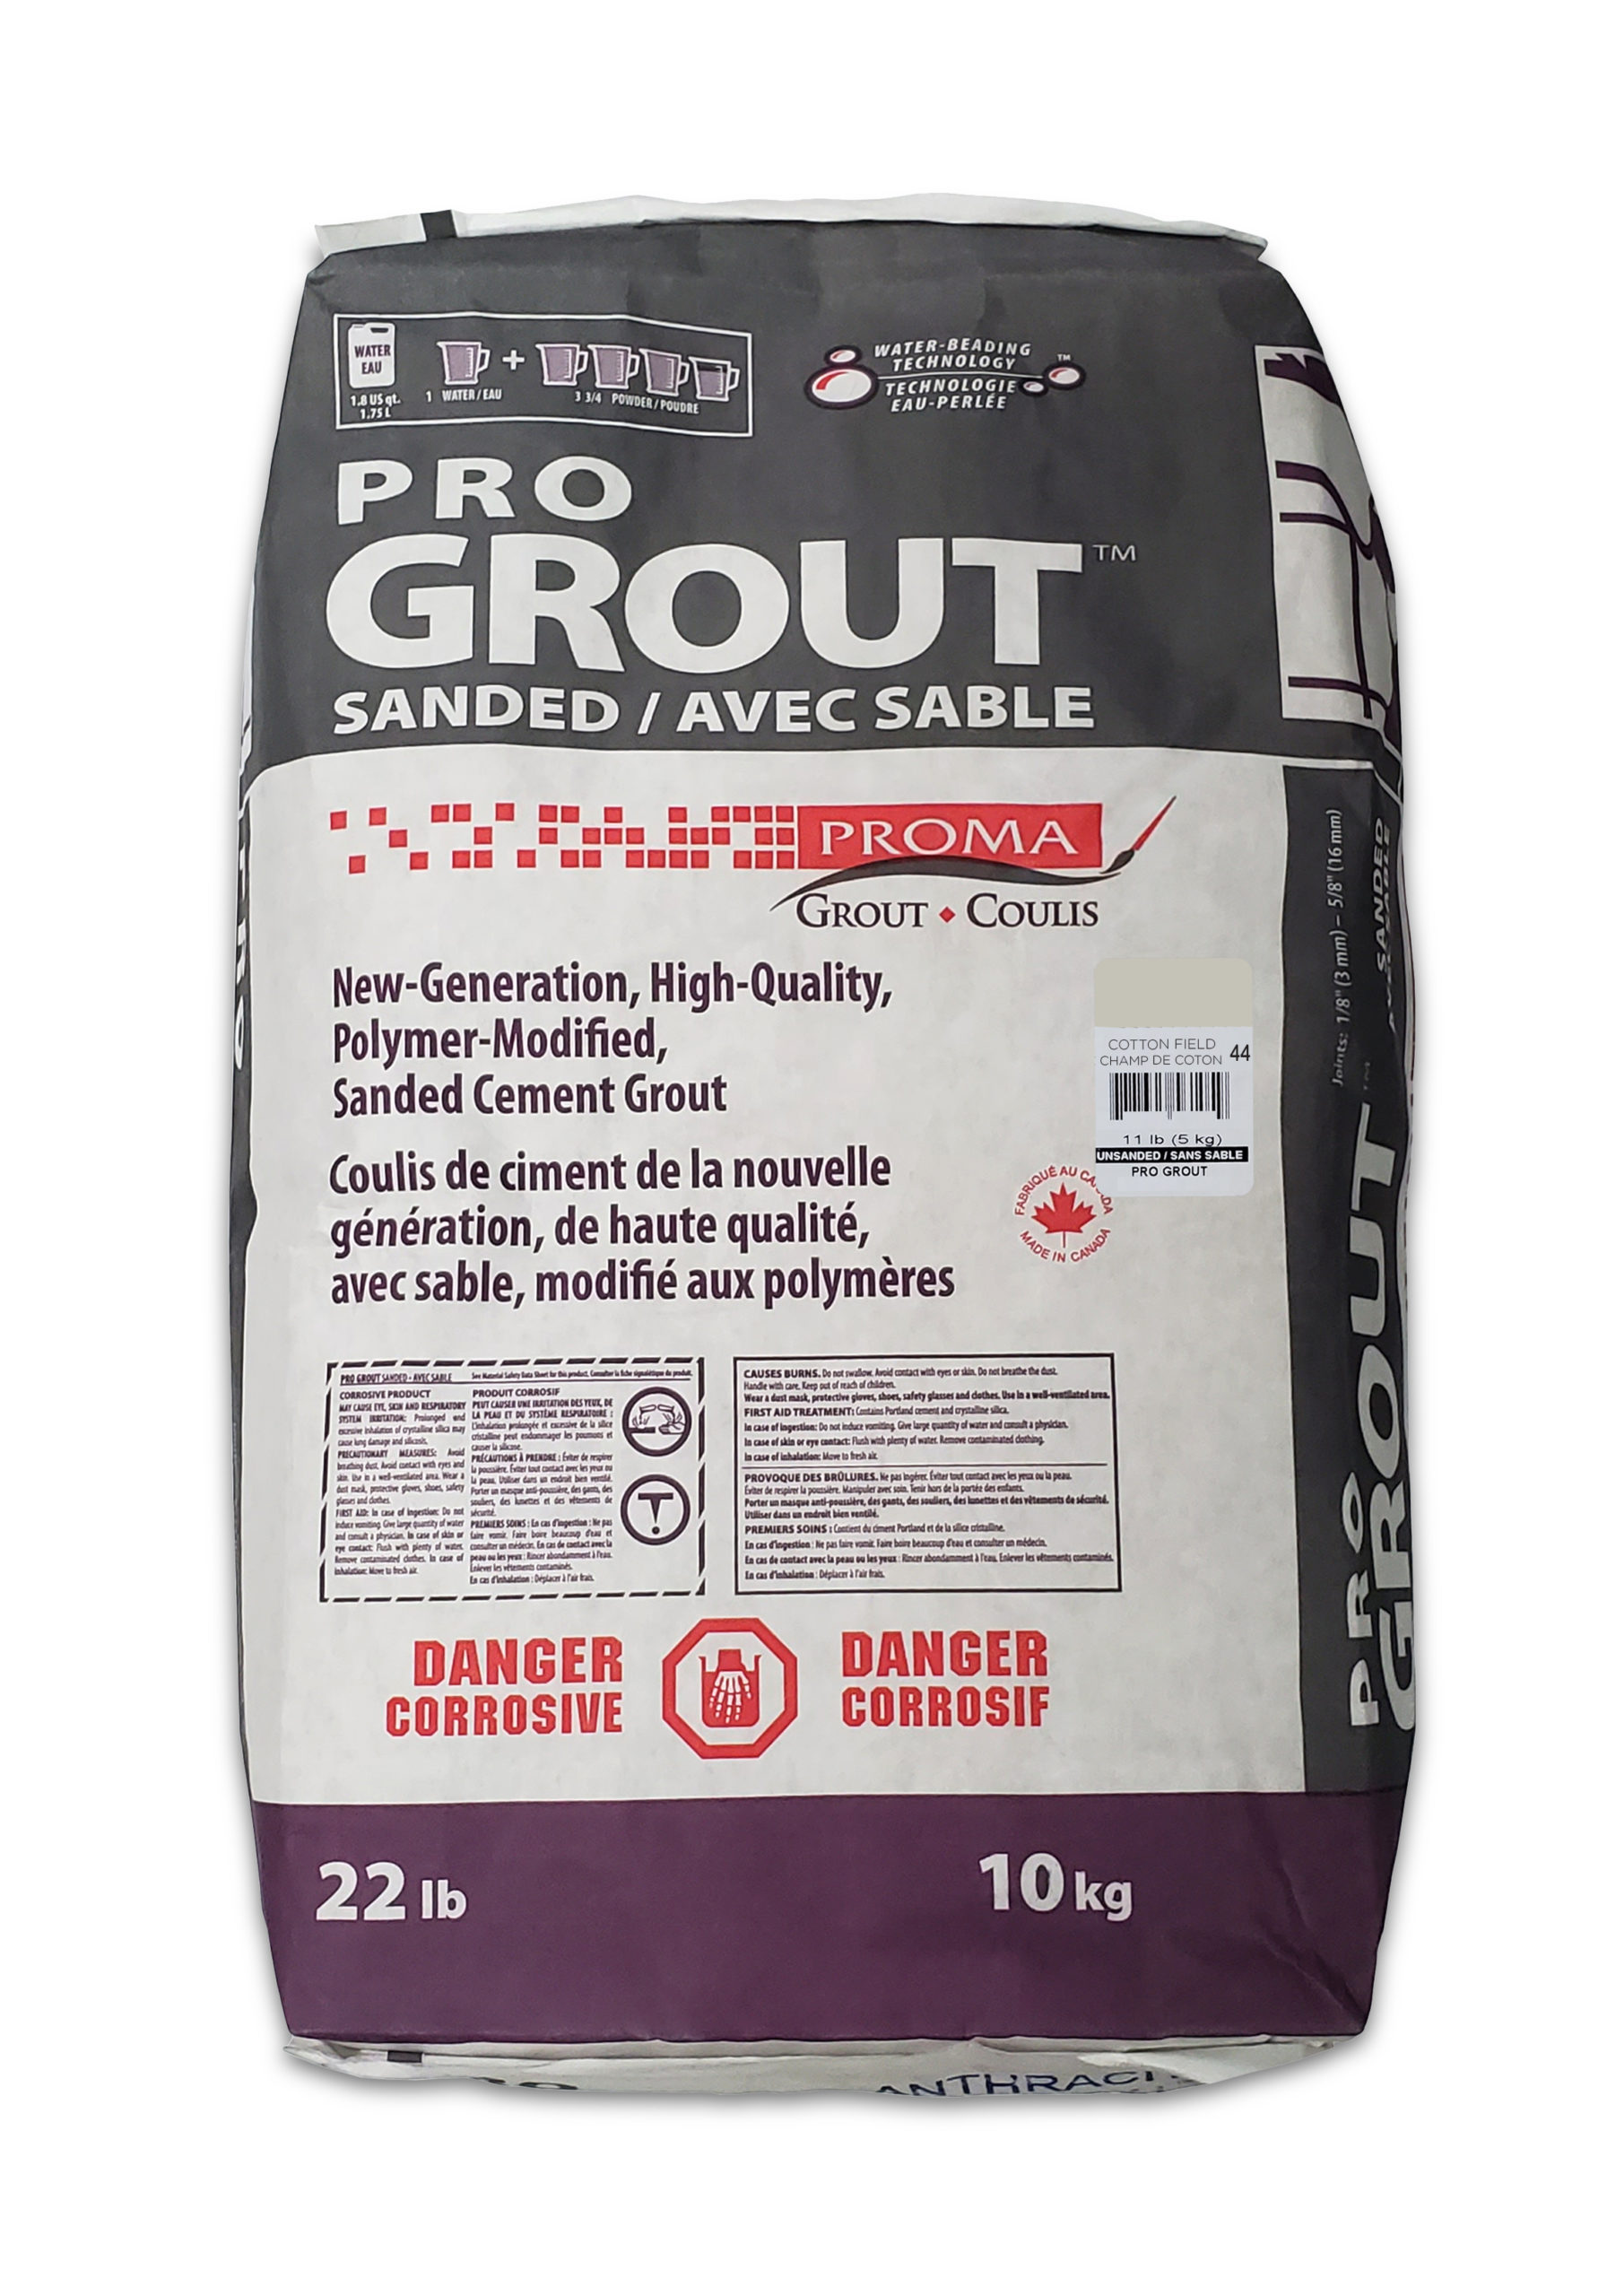 Pro Grout – Sanded_Cotton Field_10kg_22lb